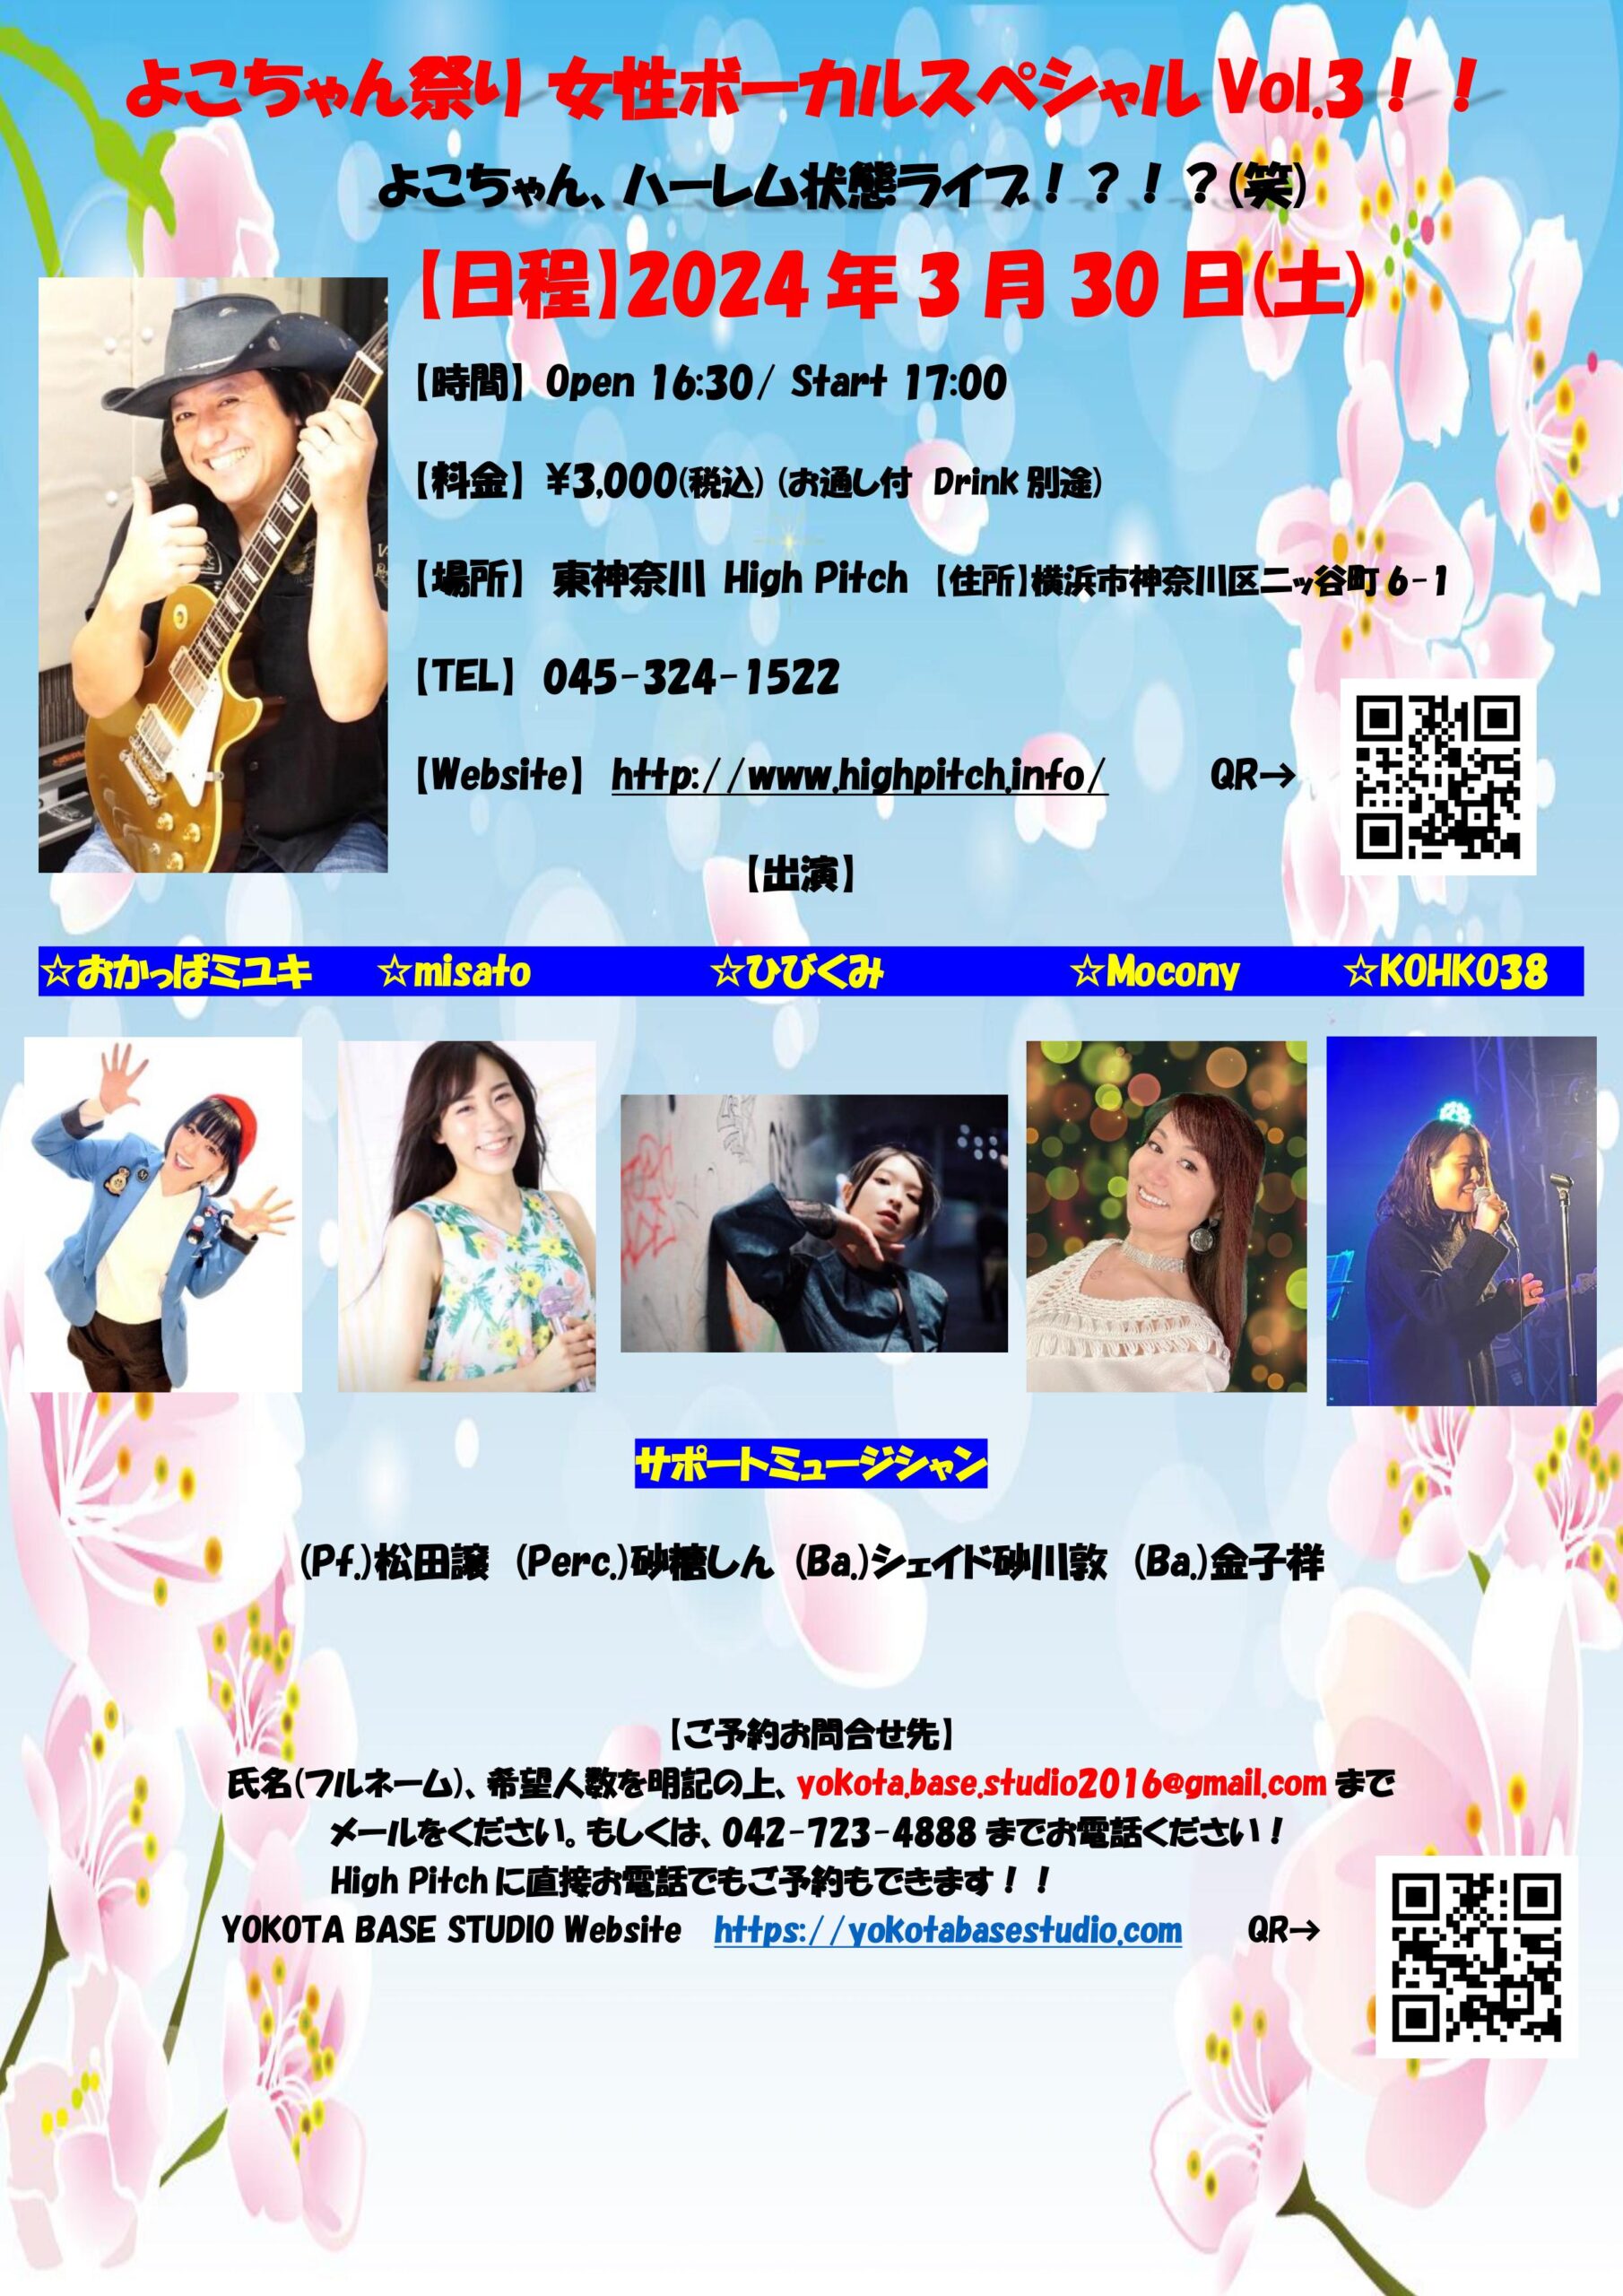 2024年3月30日(土) 神奈川県東神奈川・High Pitch「よこちゃん祭り 女性ボーカルスペシャル Vol.3」